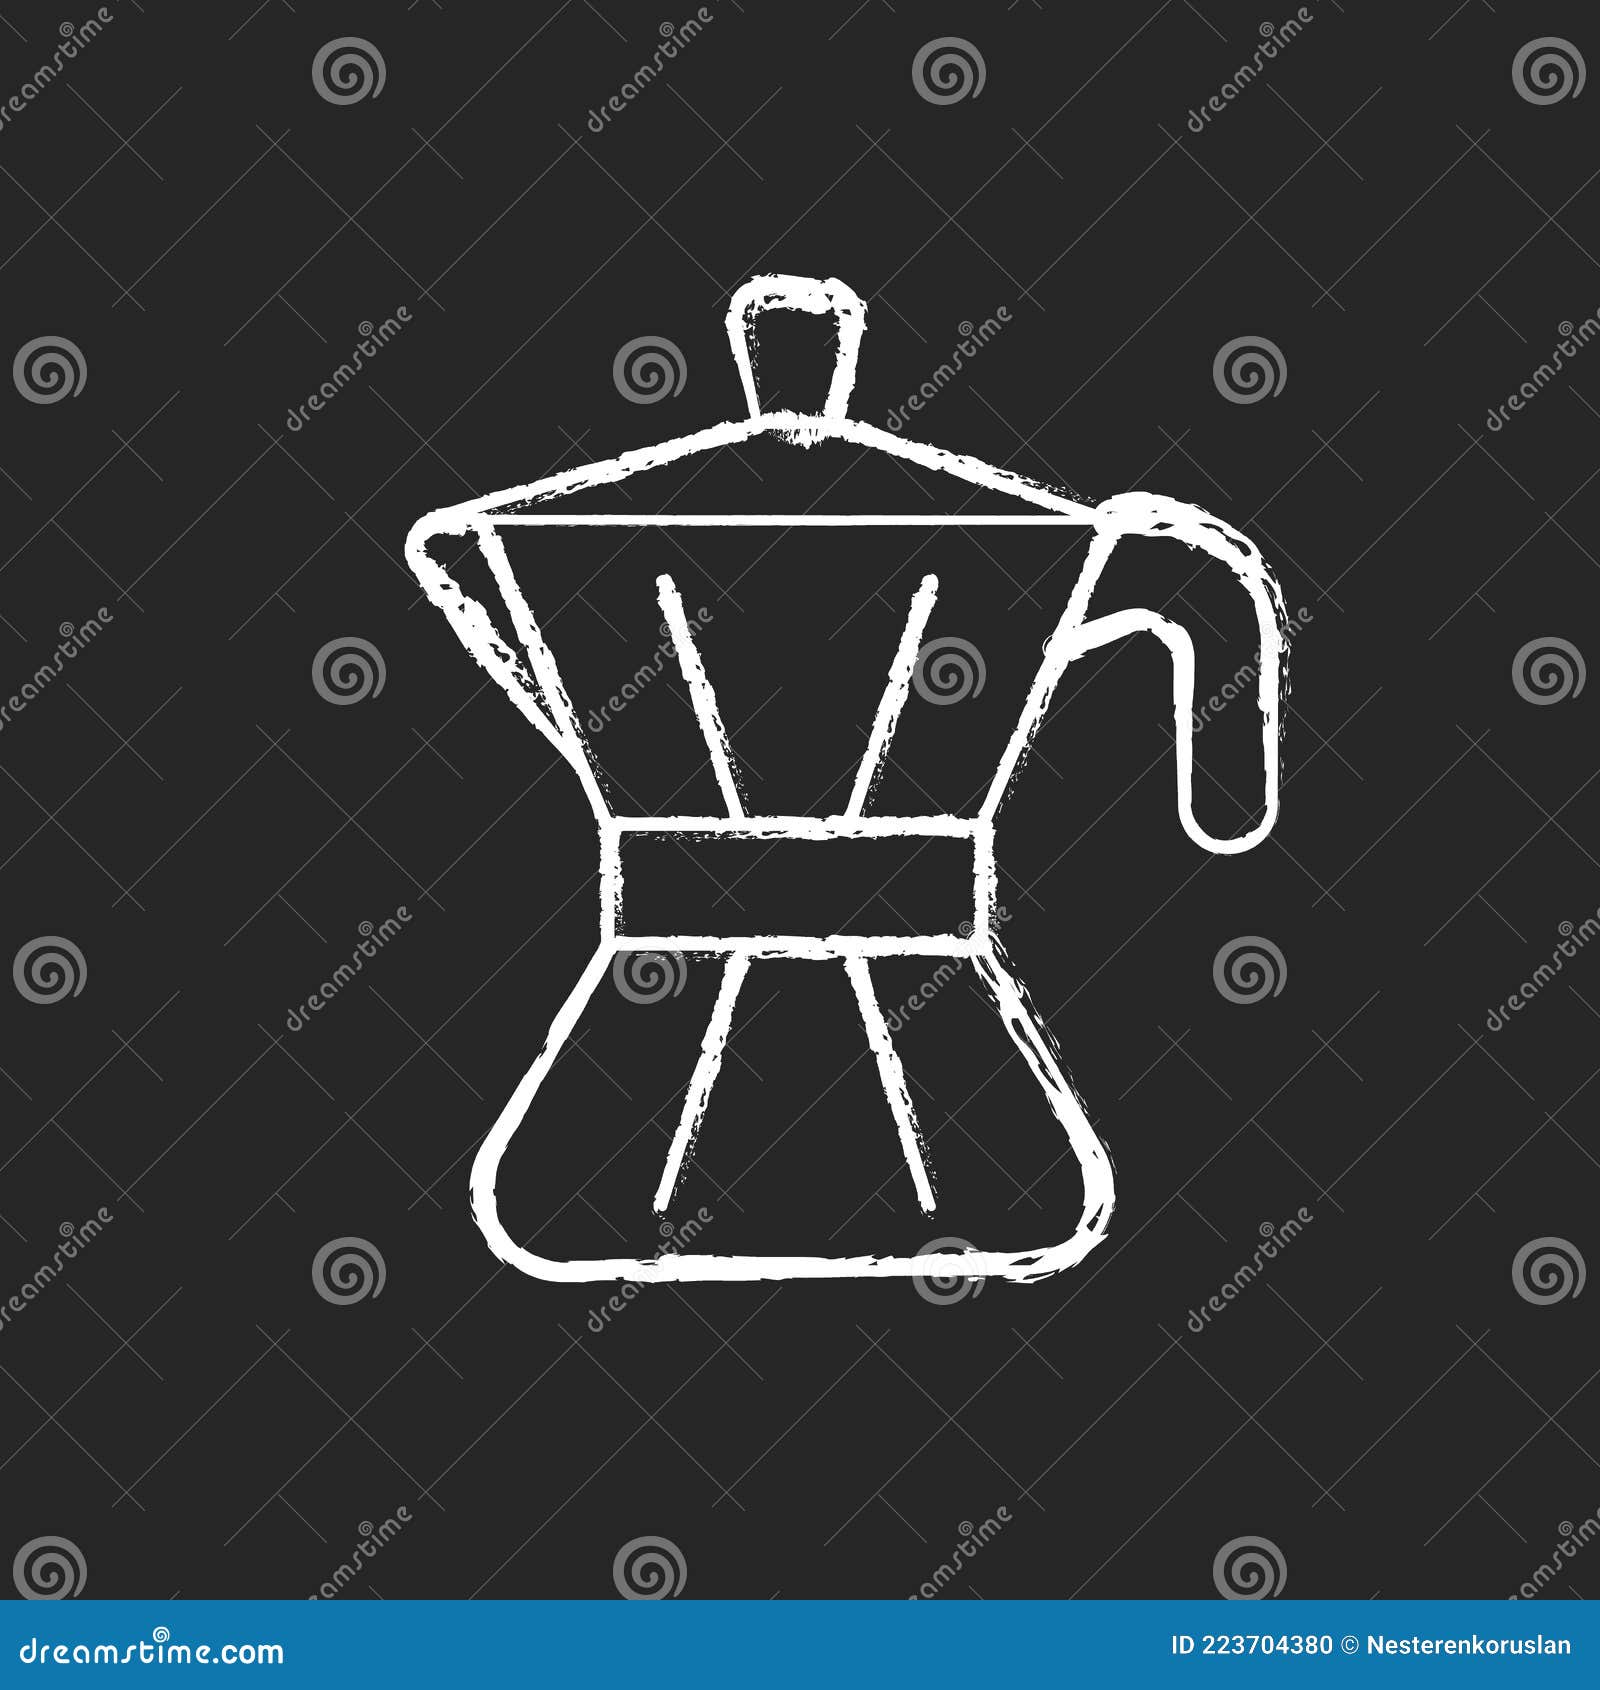 Đam mê uống cà phê kiểu ý? Hãy cùng ngắm Moka pot icon trên nền đen đẹp mắt. Chỉ với một cú lắc đơn giản, bạn sẽ có được một ly cà phê ngon tuyệt.